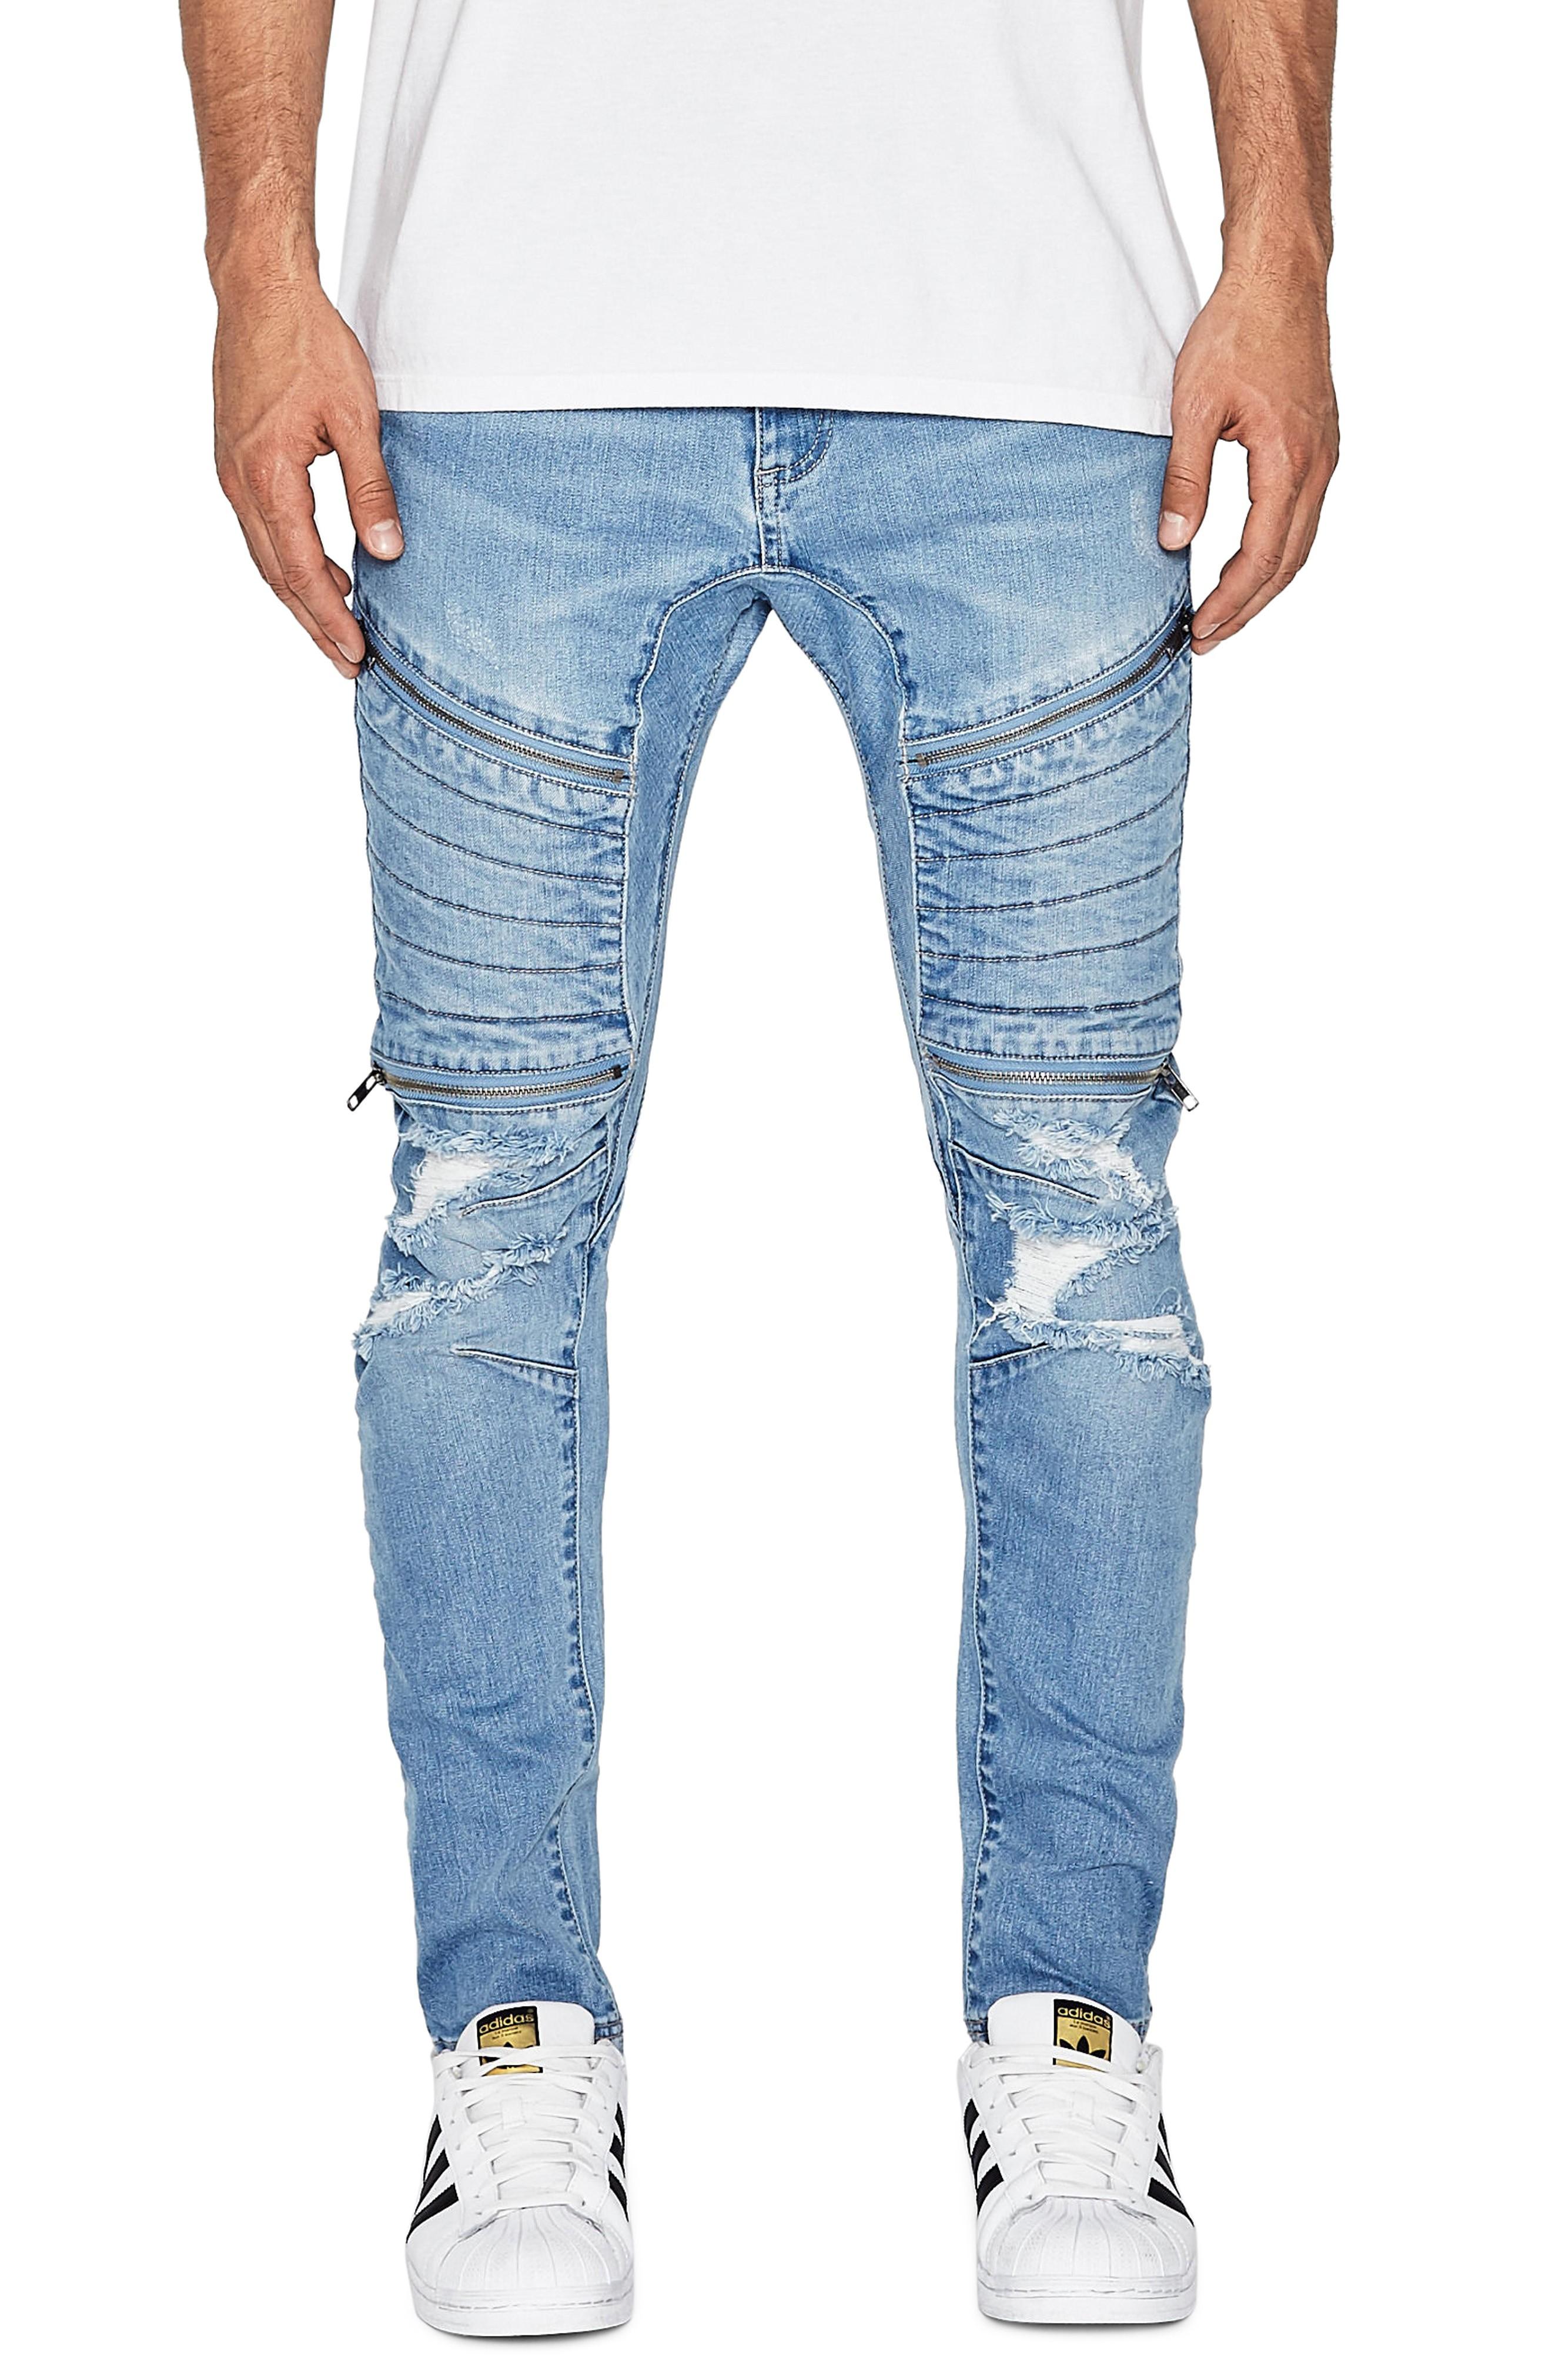 Nxp Vengeance Skinny Moto Jeans In Nevada Blue | ModeSens